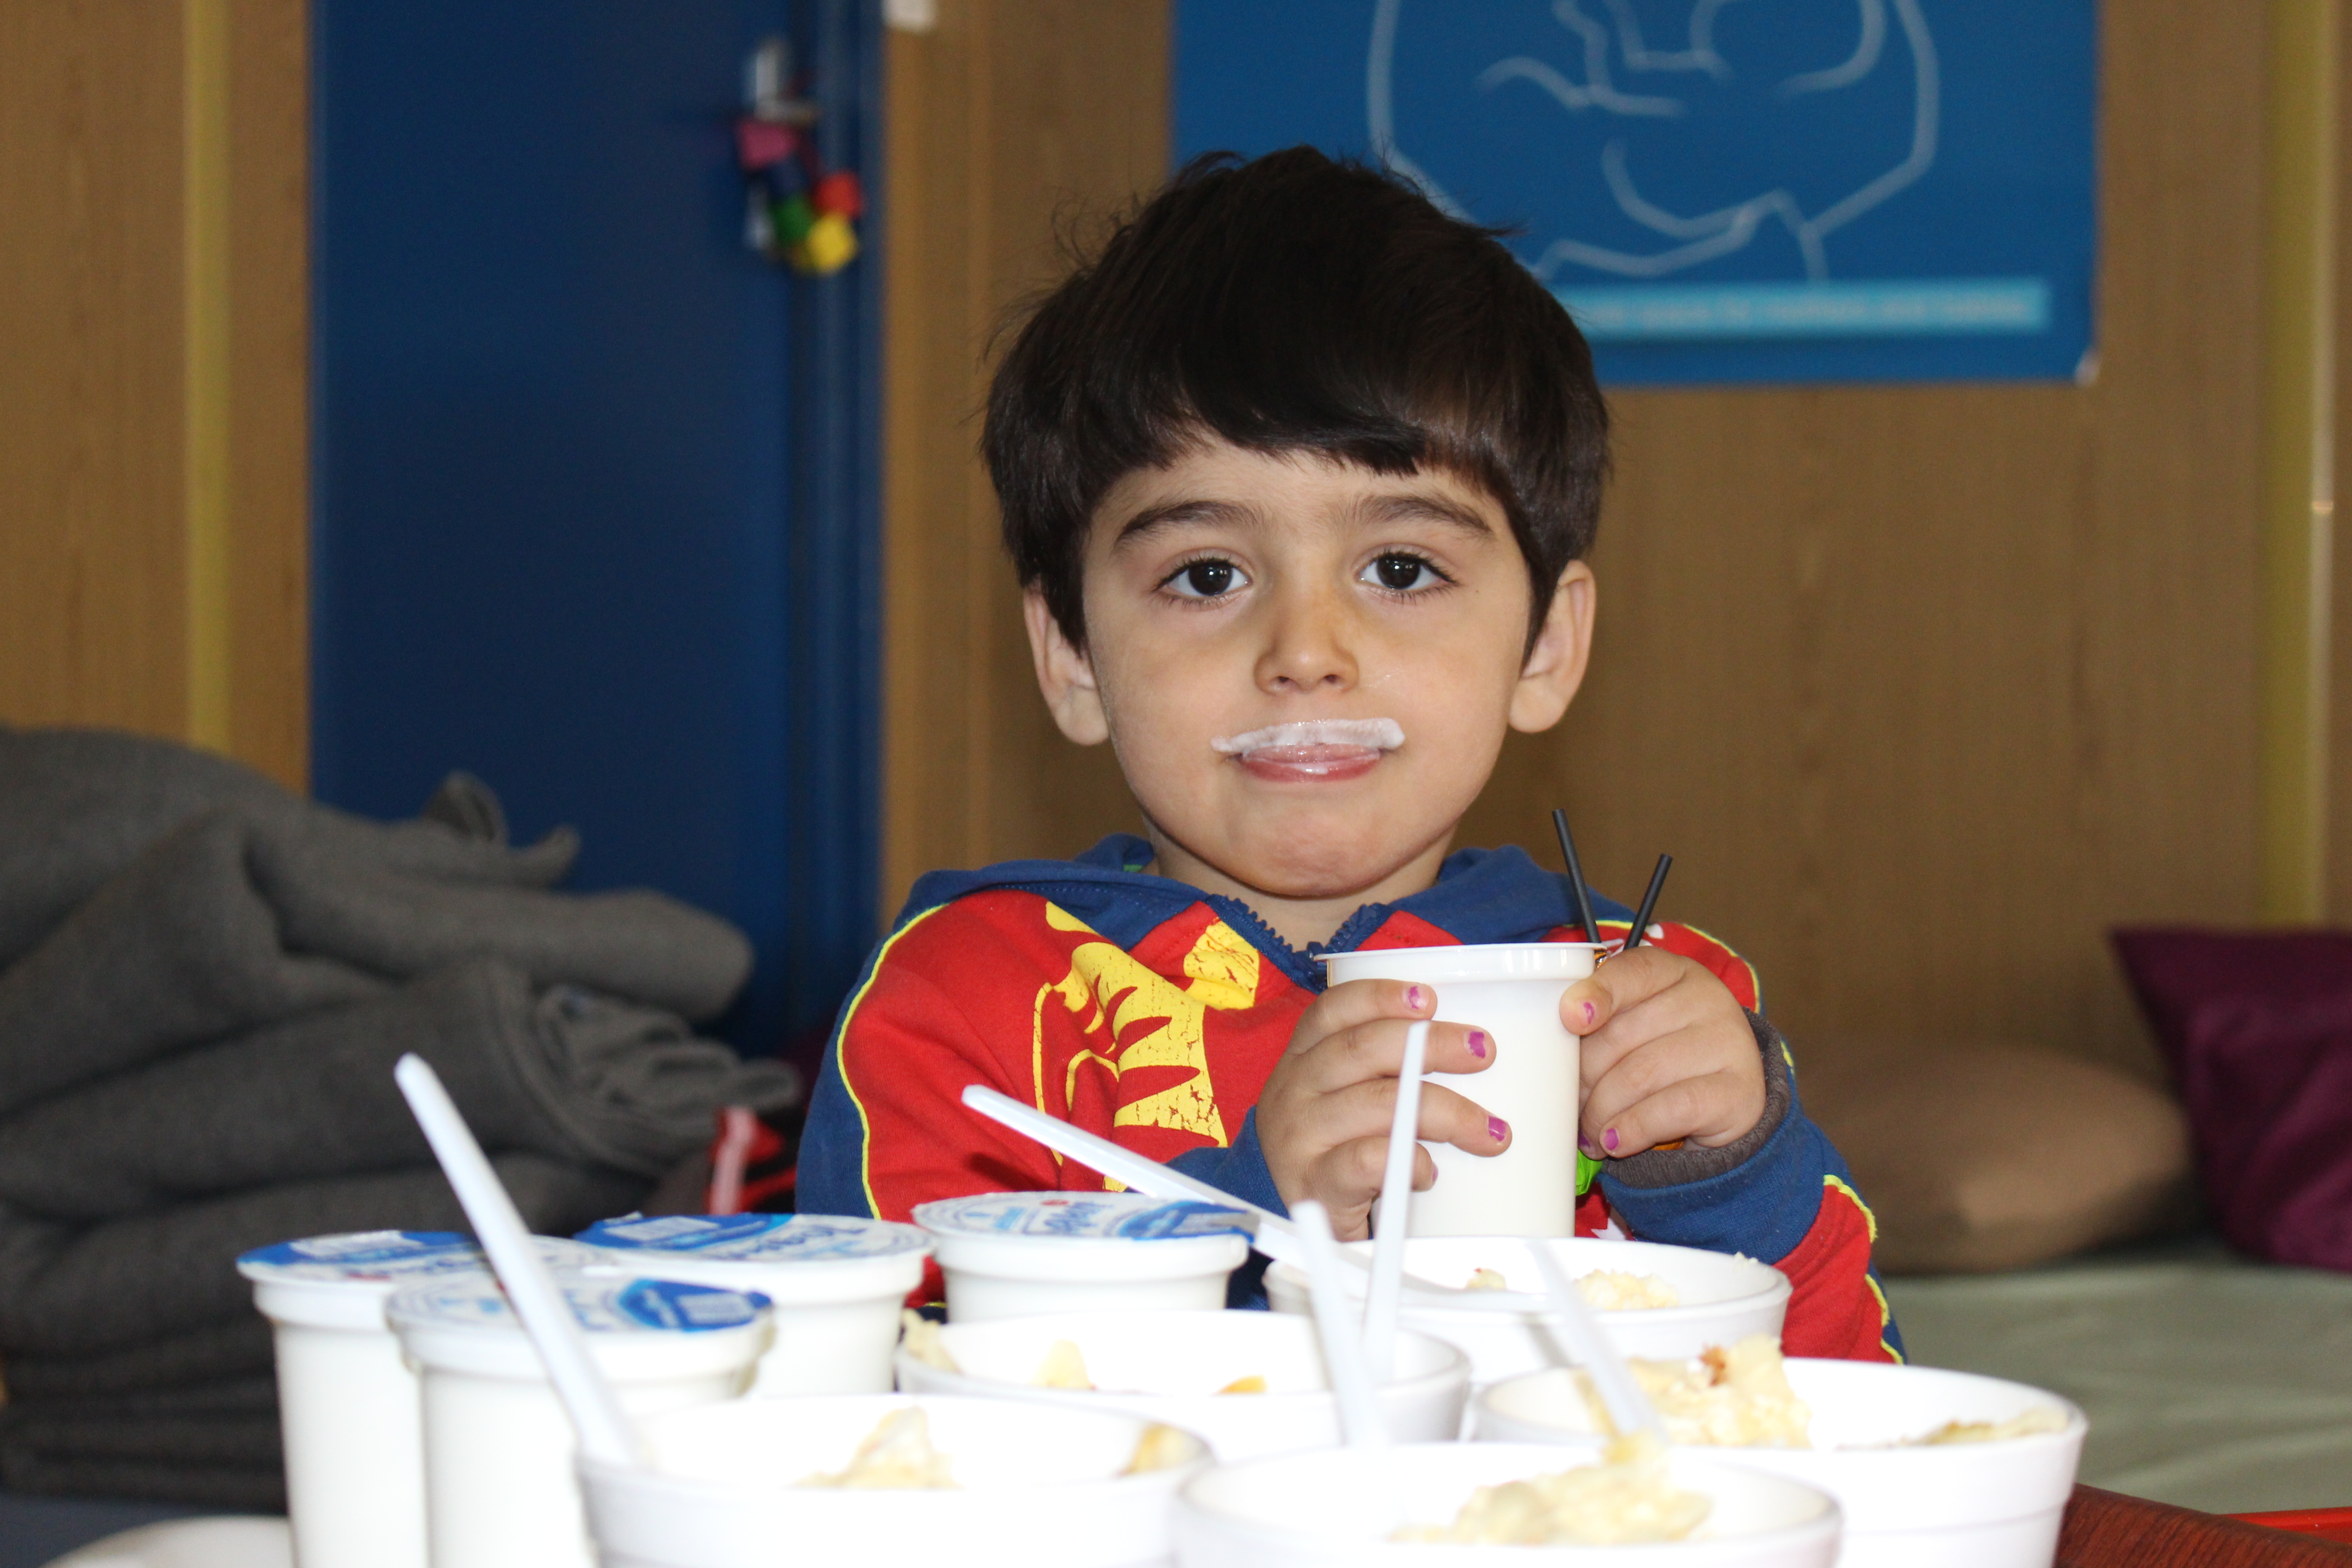 Barran enjoyed his yogurt so much he "grew" white mustaches 